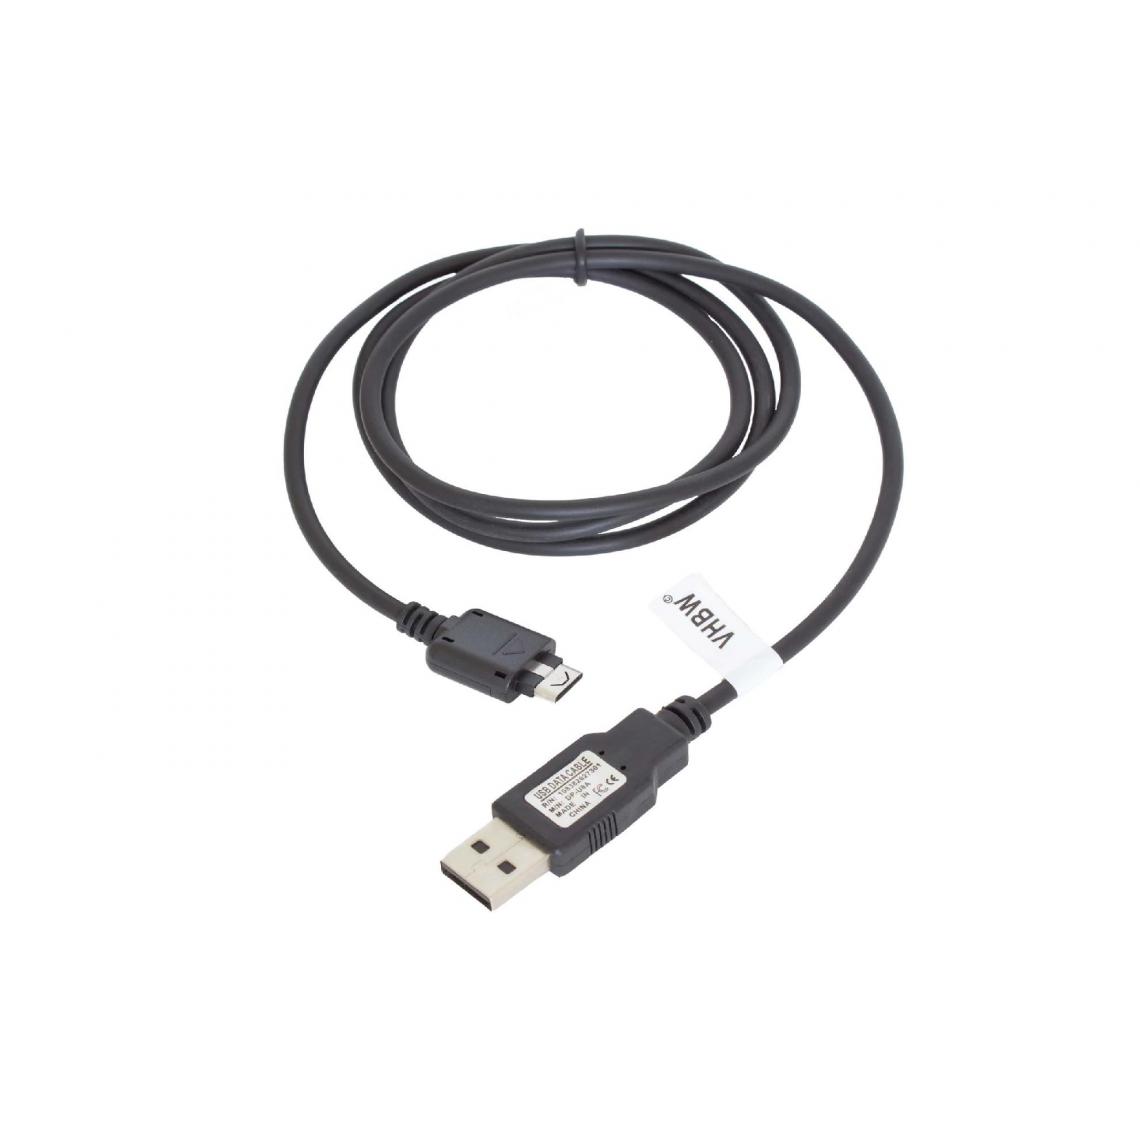 Vhbw - vhbw câble de données USB compatible avec LG KM380, KP100, KP130, KP230, KP235, KP502, KS10, KS20, KS360, KT610, KU310, KU311 téléphone - noir 100cm - Autres accessoires smartphone